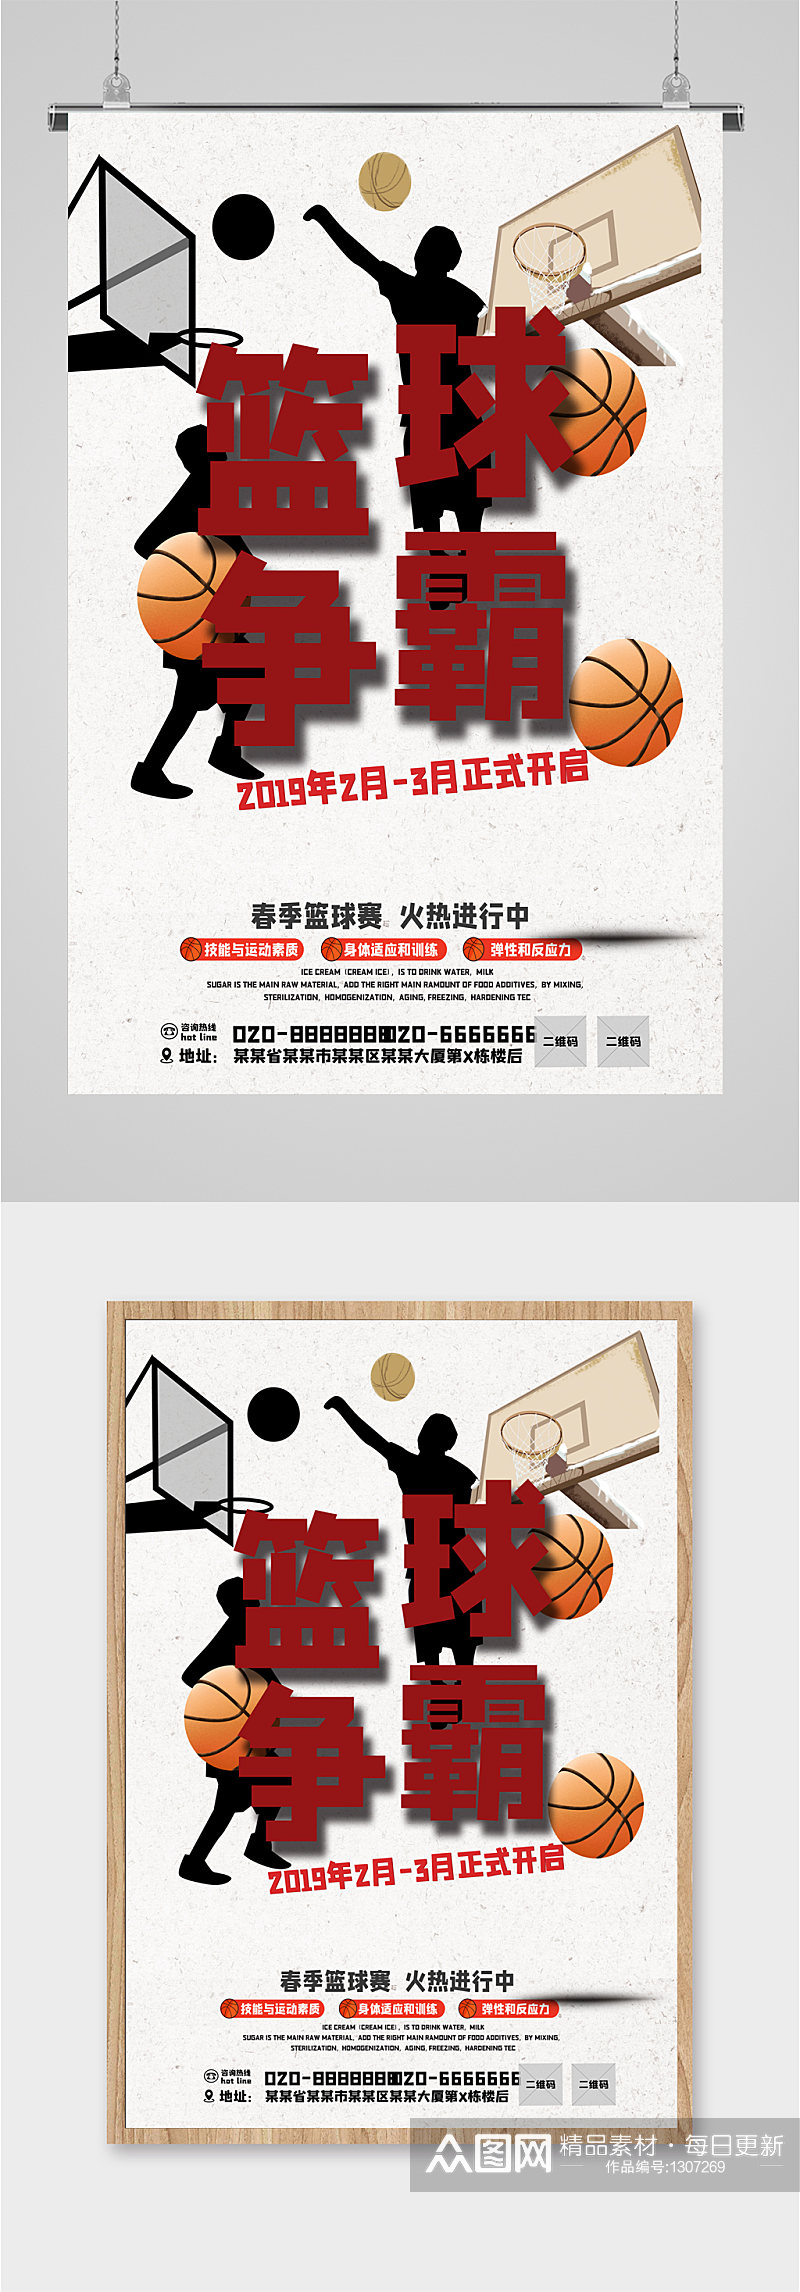 篮球争霸赛宣传海报素材